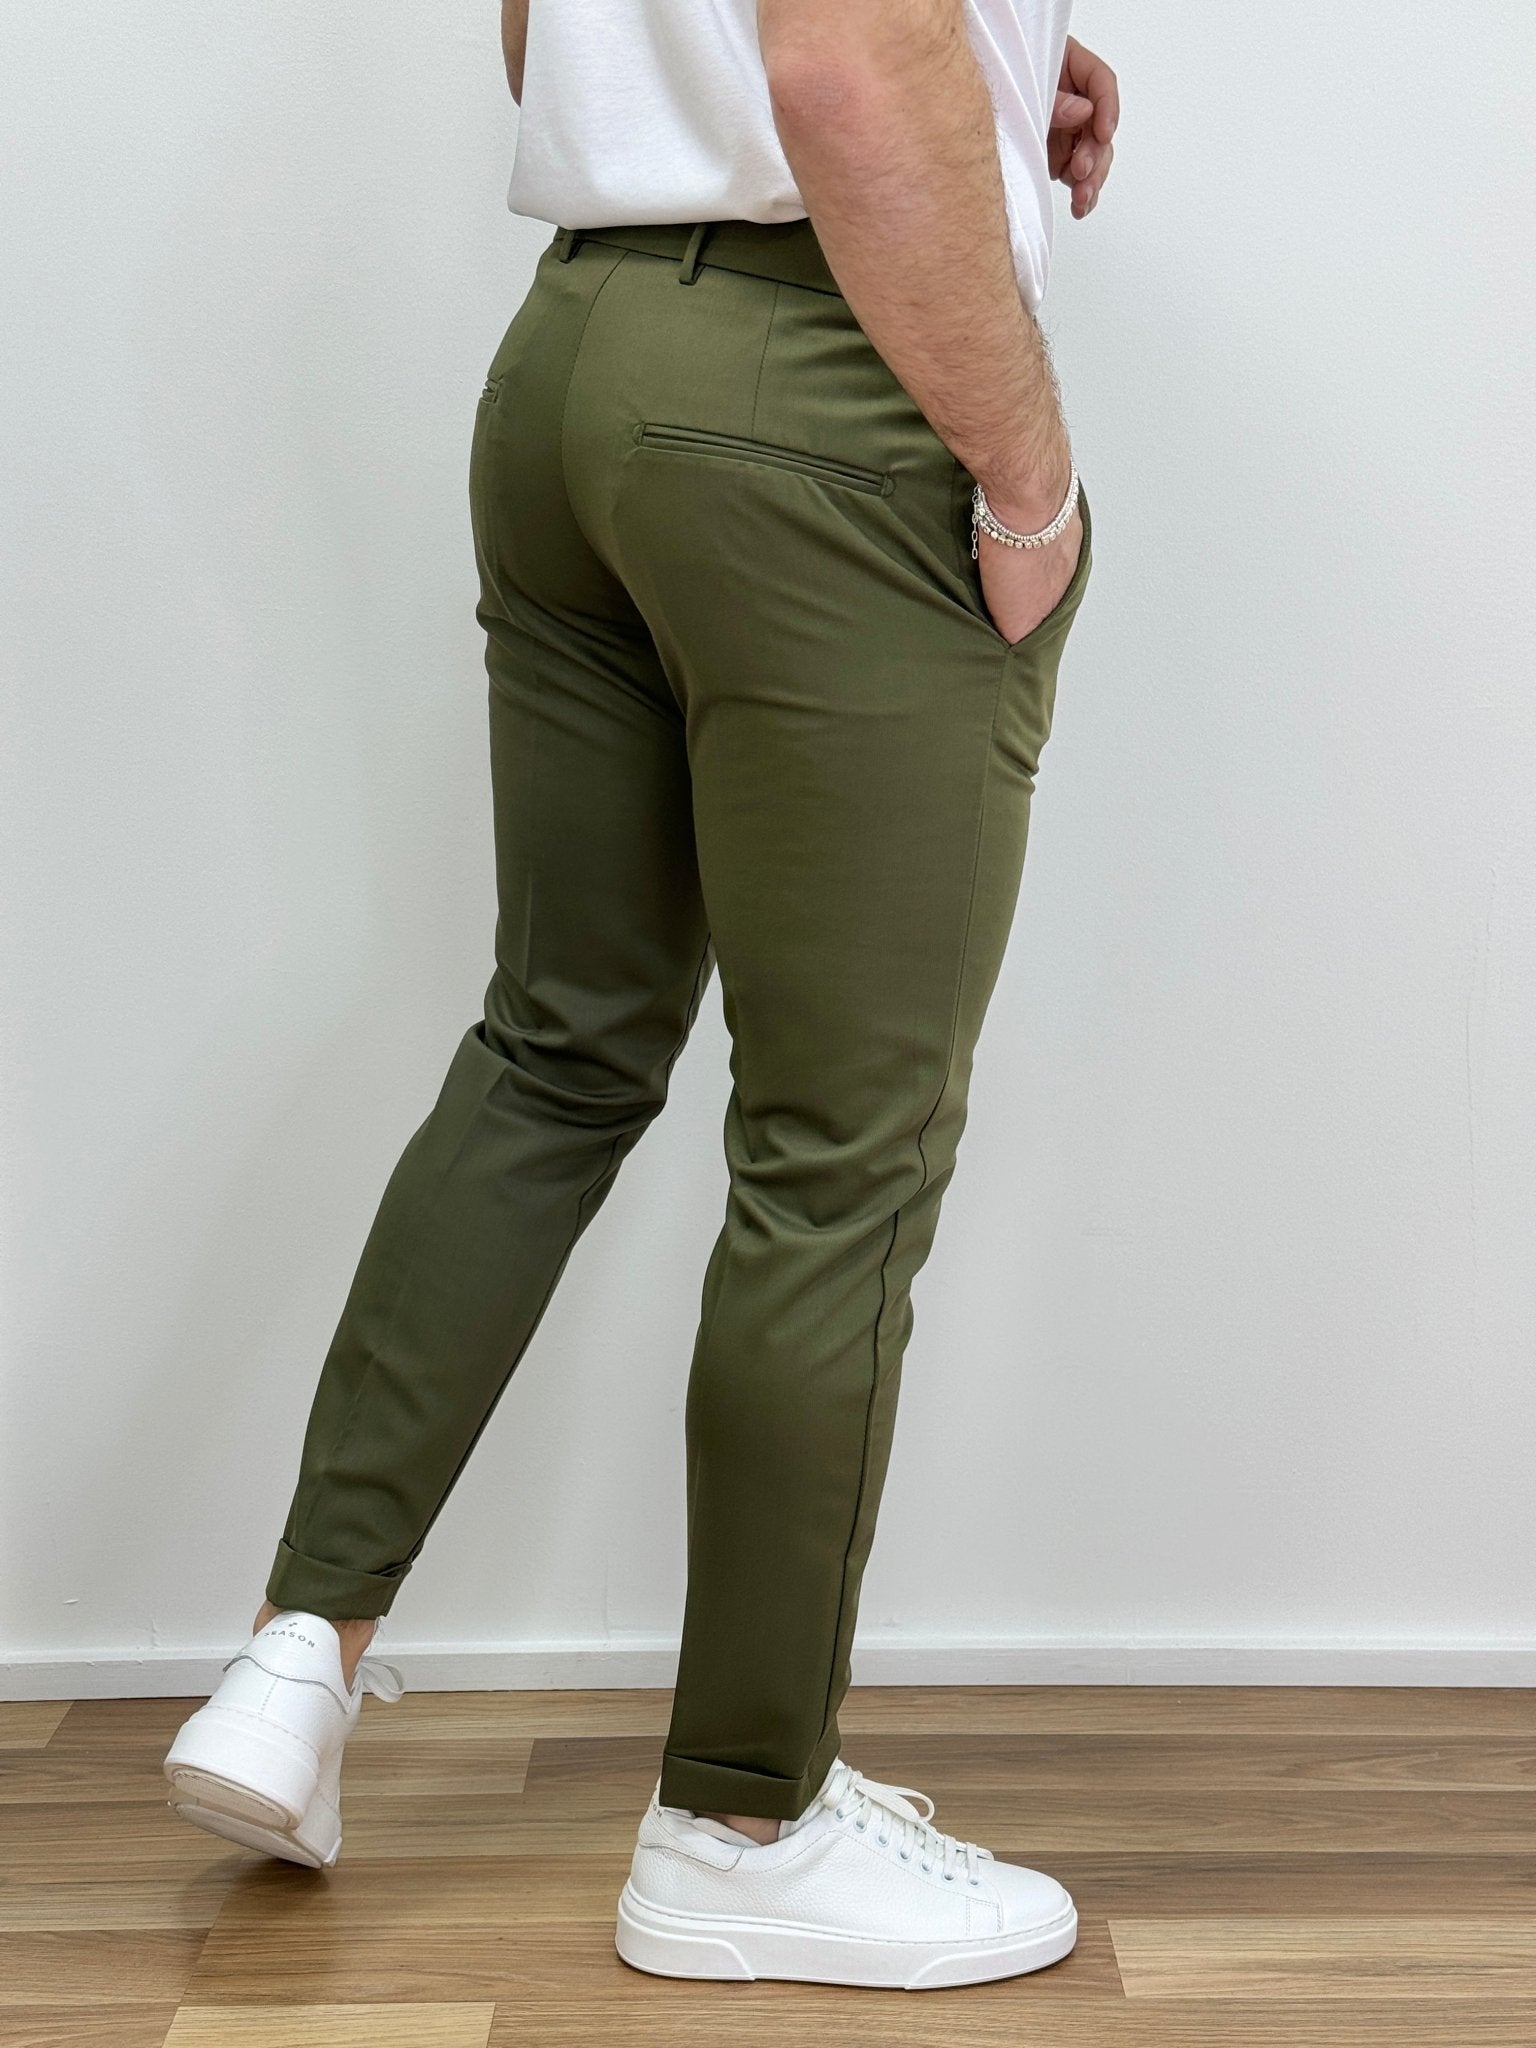 Pantalone Uomo Napoli Verde - SEASON LAB